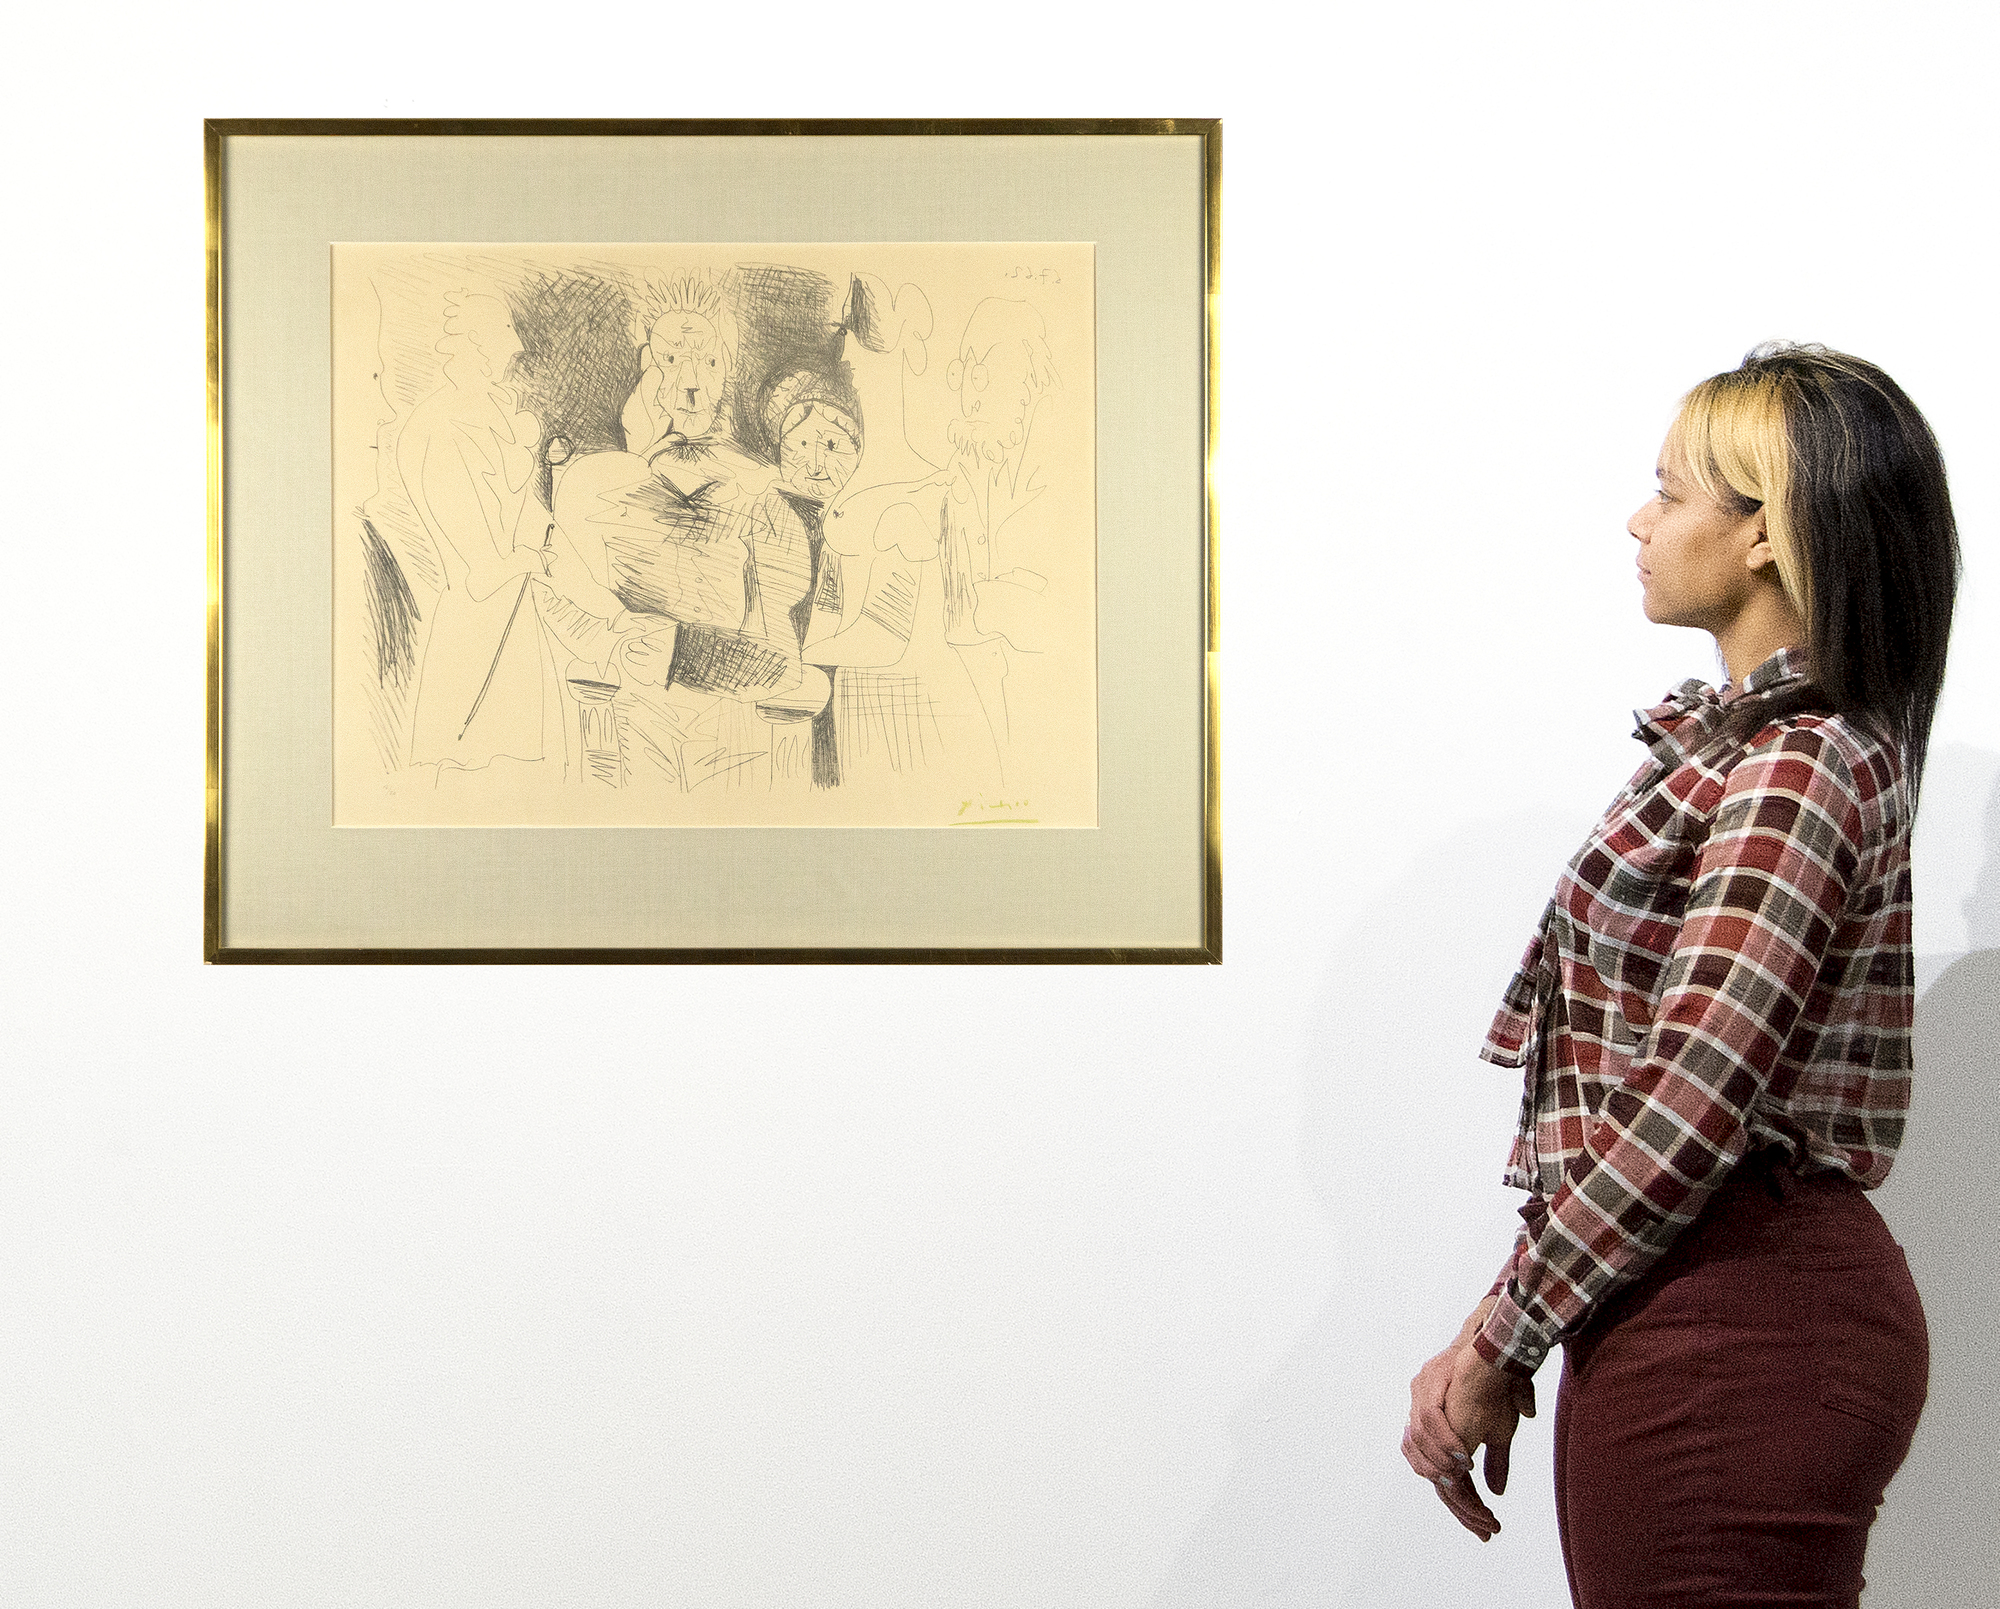 PABLO PICASSO - Portrait de Famille, Sechs Personen - Lithographie - 18 1/4 x 25 3/4 in.